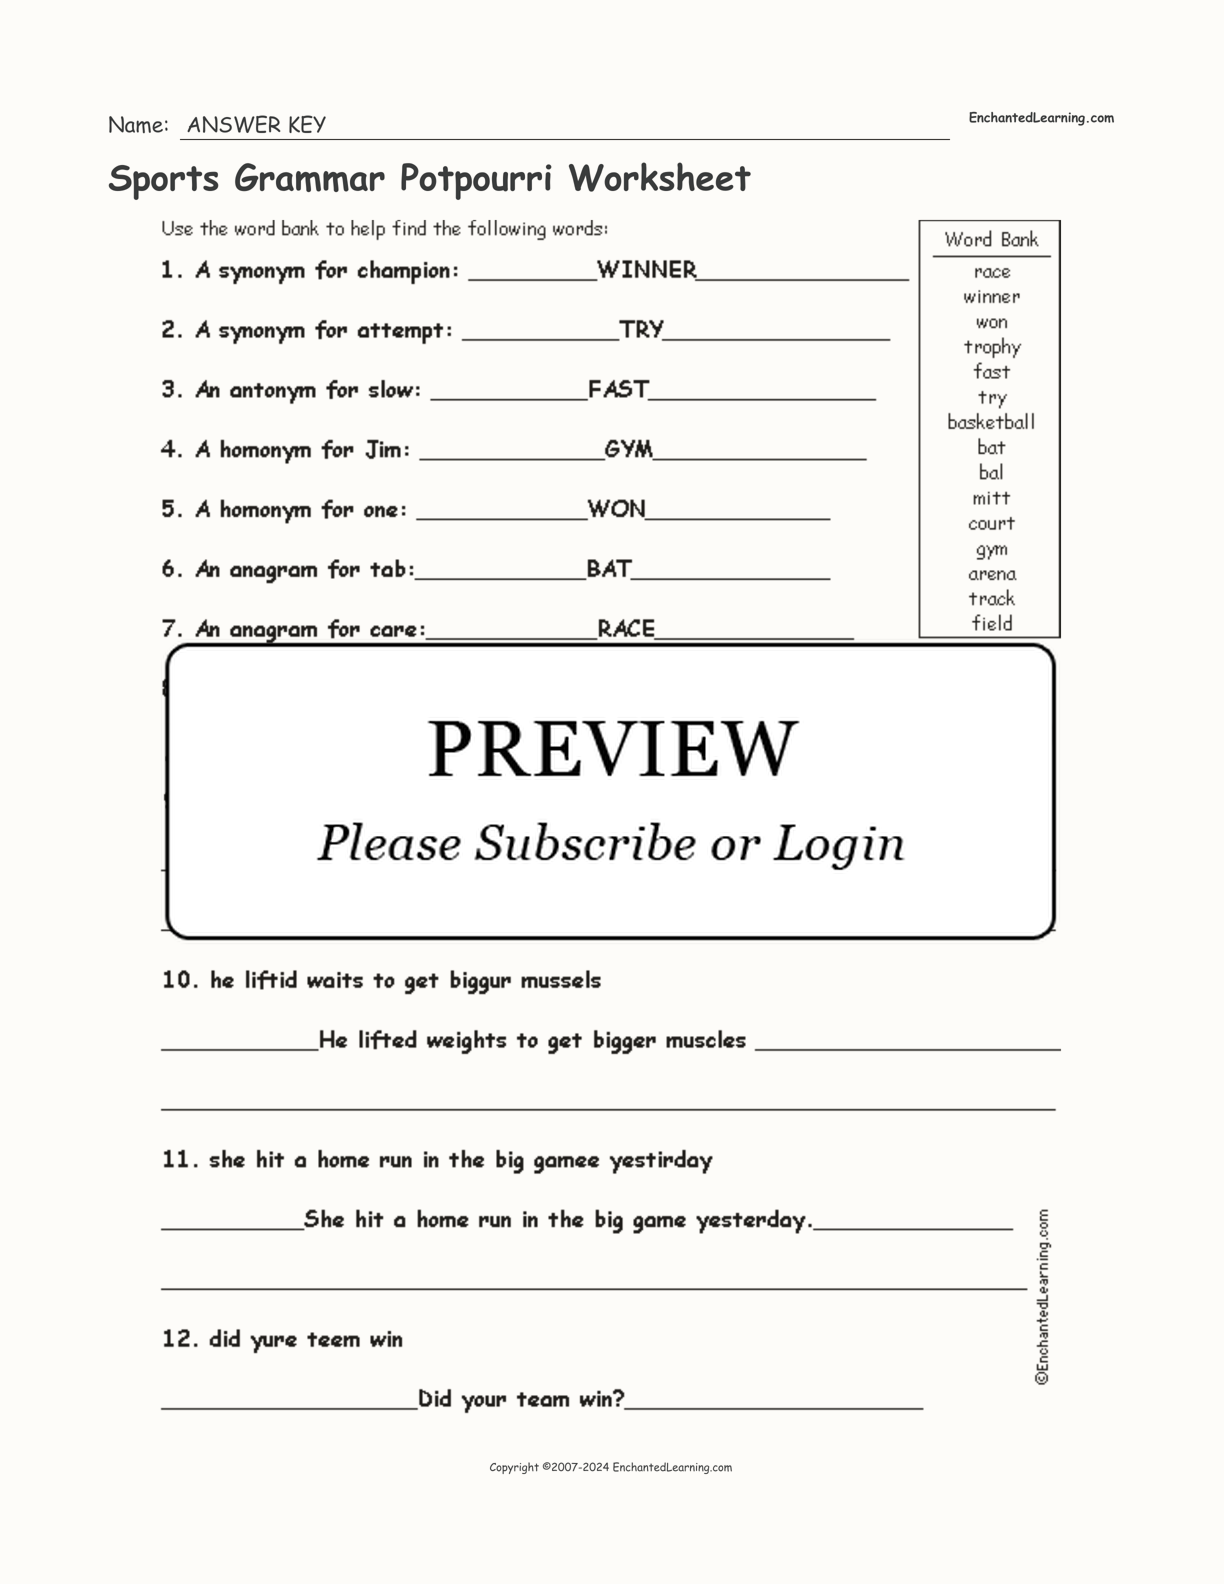 Sports Grammar Potpourri Worksheet interactive worksheet page 2